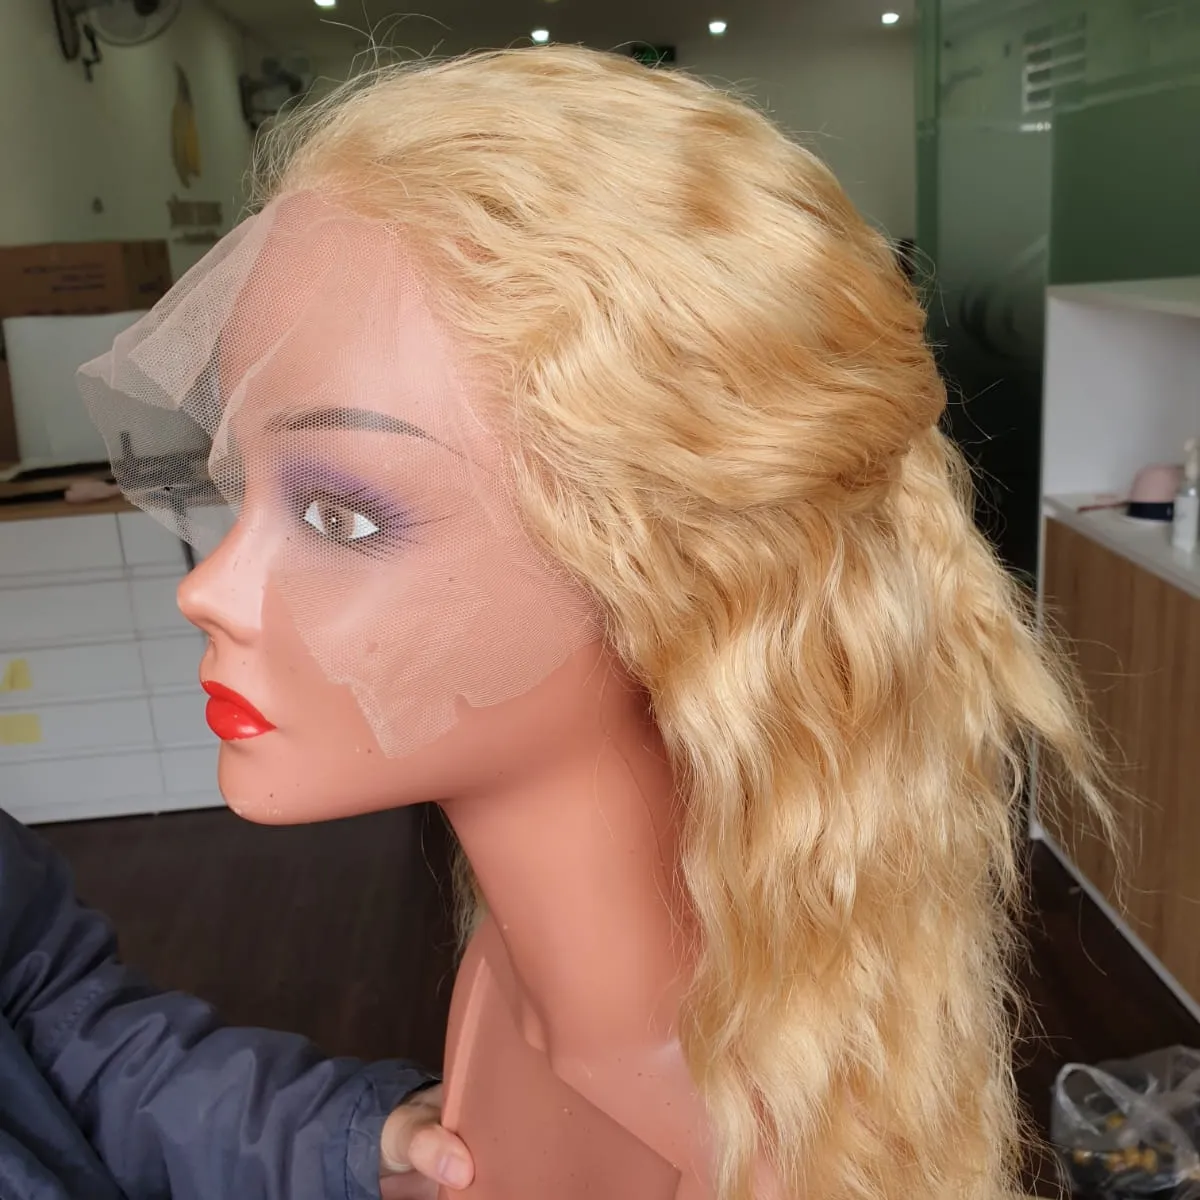 Peluca de cabello humano vietnamita 100% sin procesar, disponible, pedido mínimo de 3 piezas, envío por todo el mundo